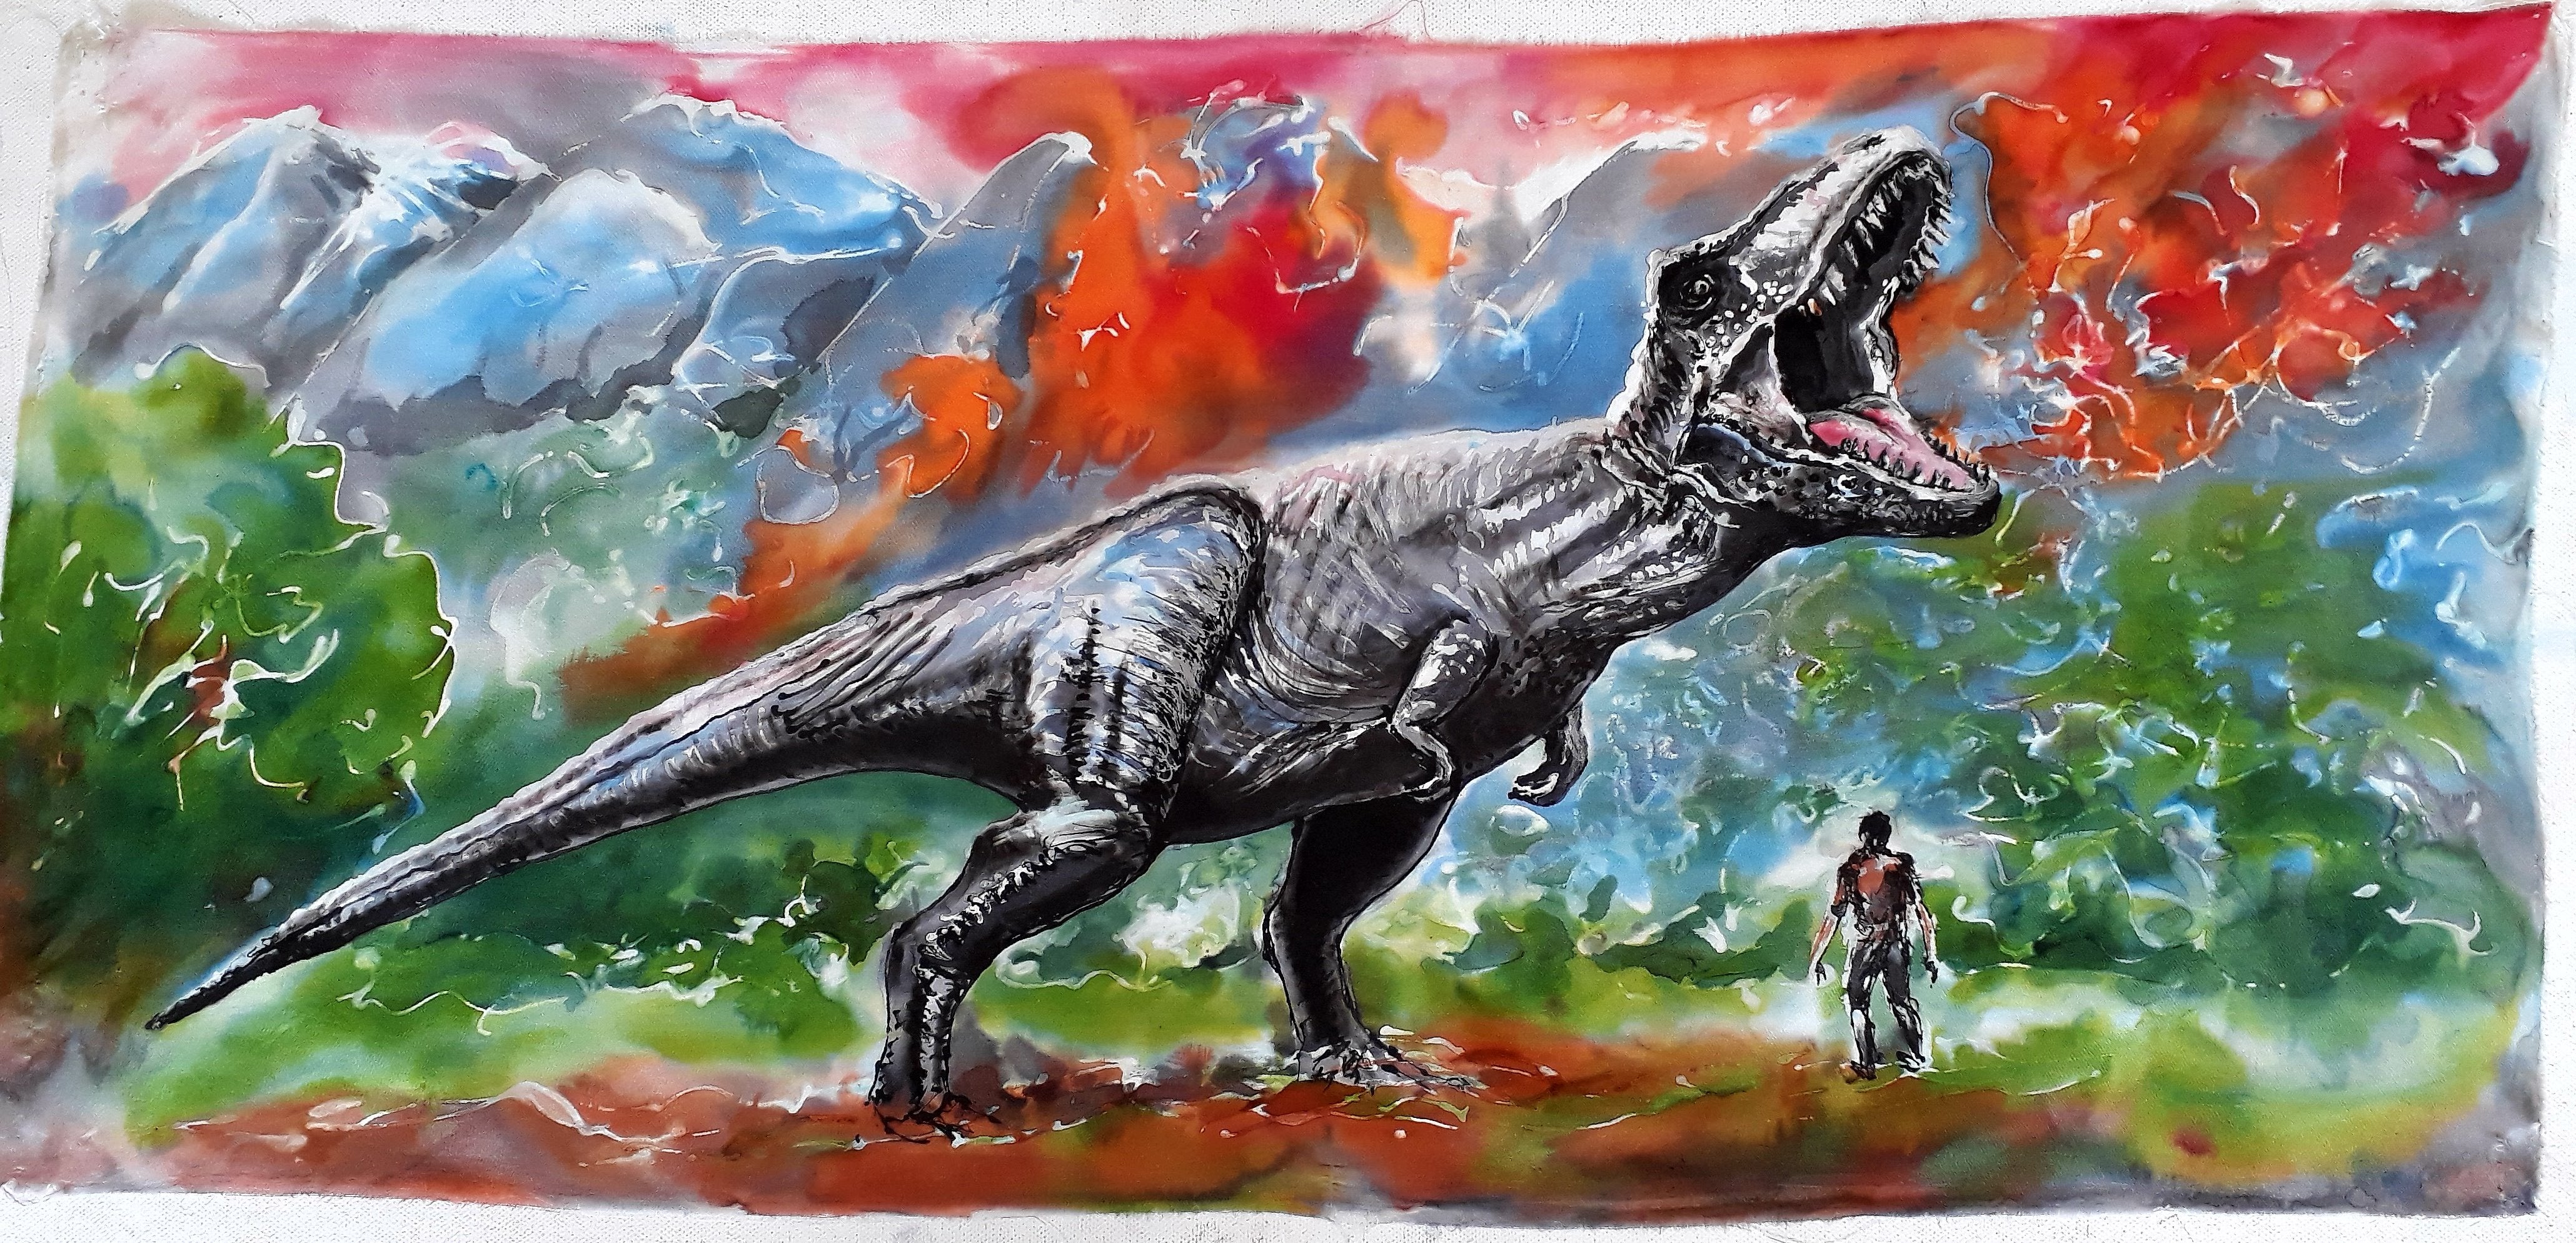 Dinosaur Original Silk Painting - Satherley Silks NZ